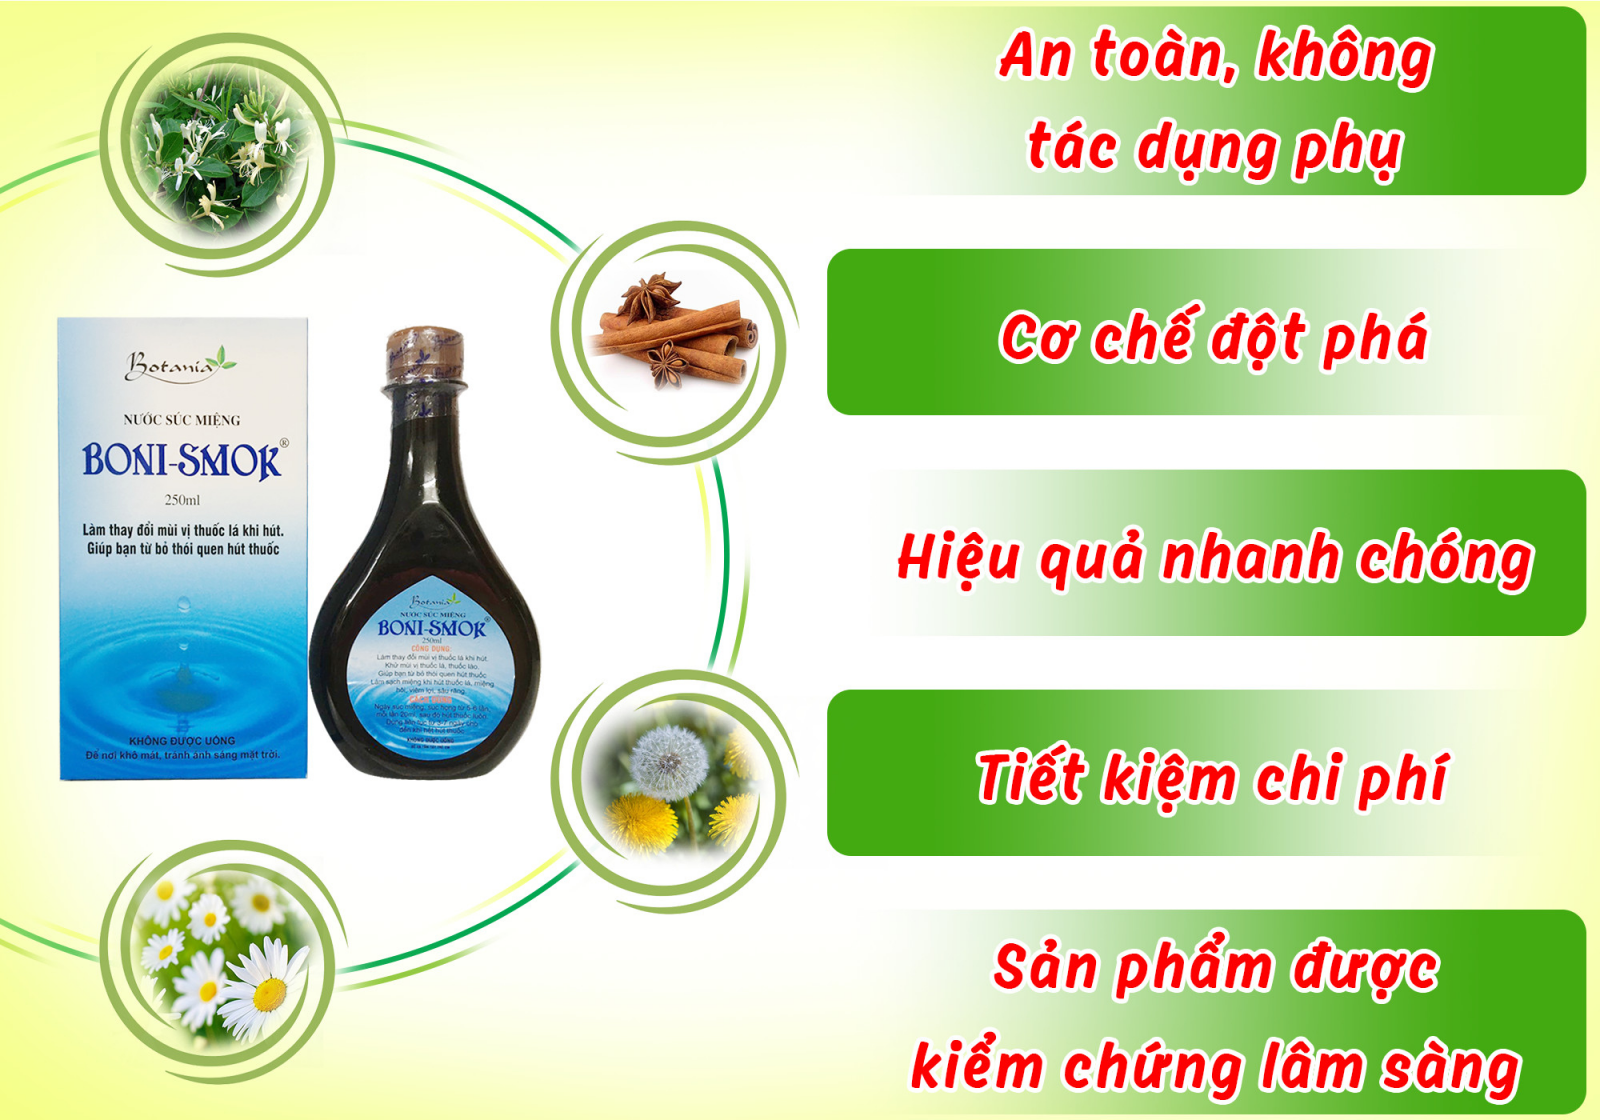 Boni-Smok- Nước súc miệng giúp bỏ thuốc lá số 1 Việt Nam